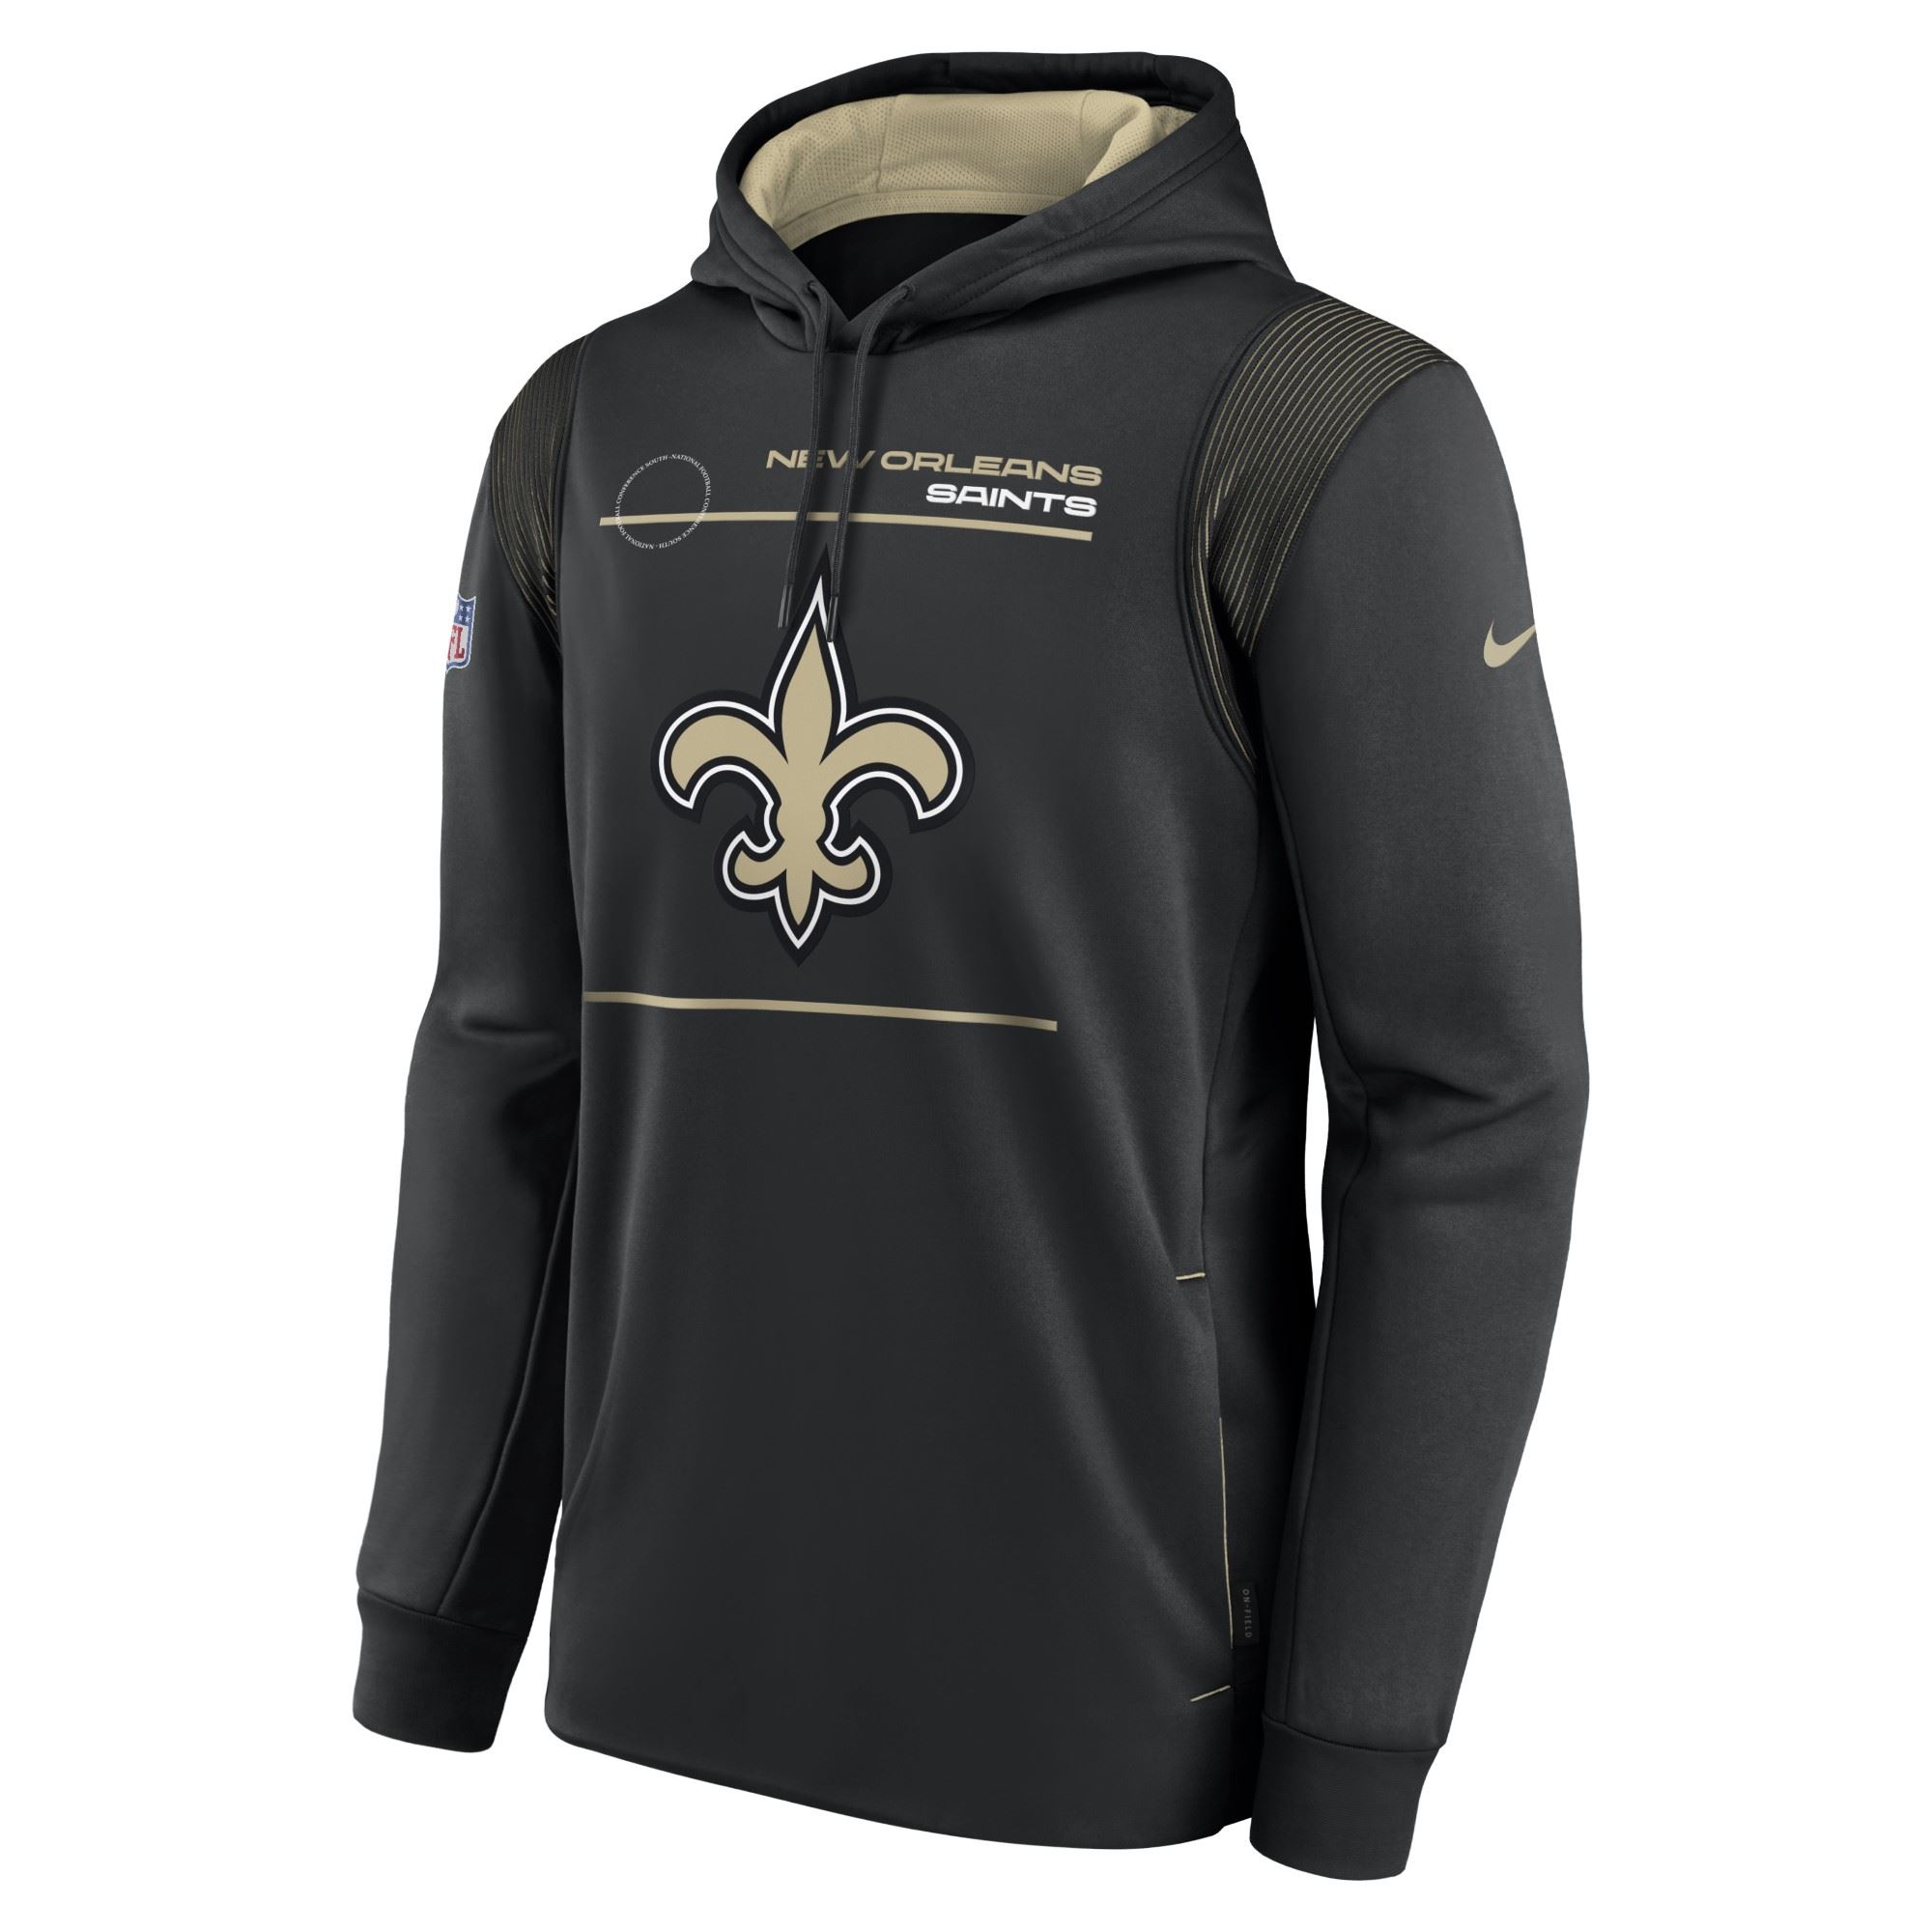 New Orleans Saints Black NFL Therma Hoody Nike